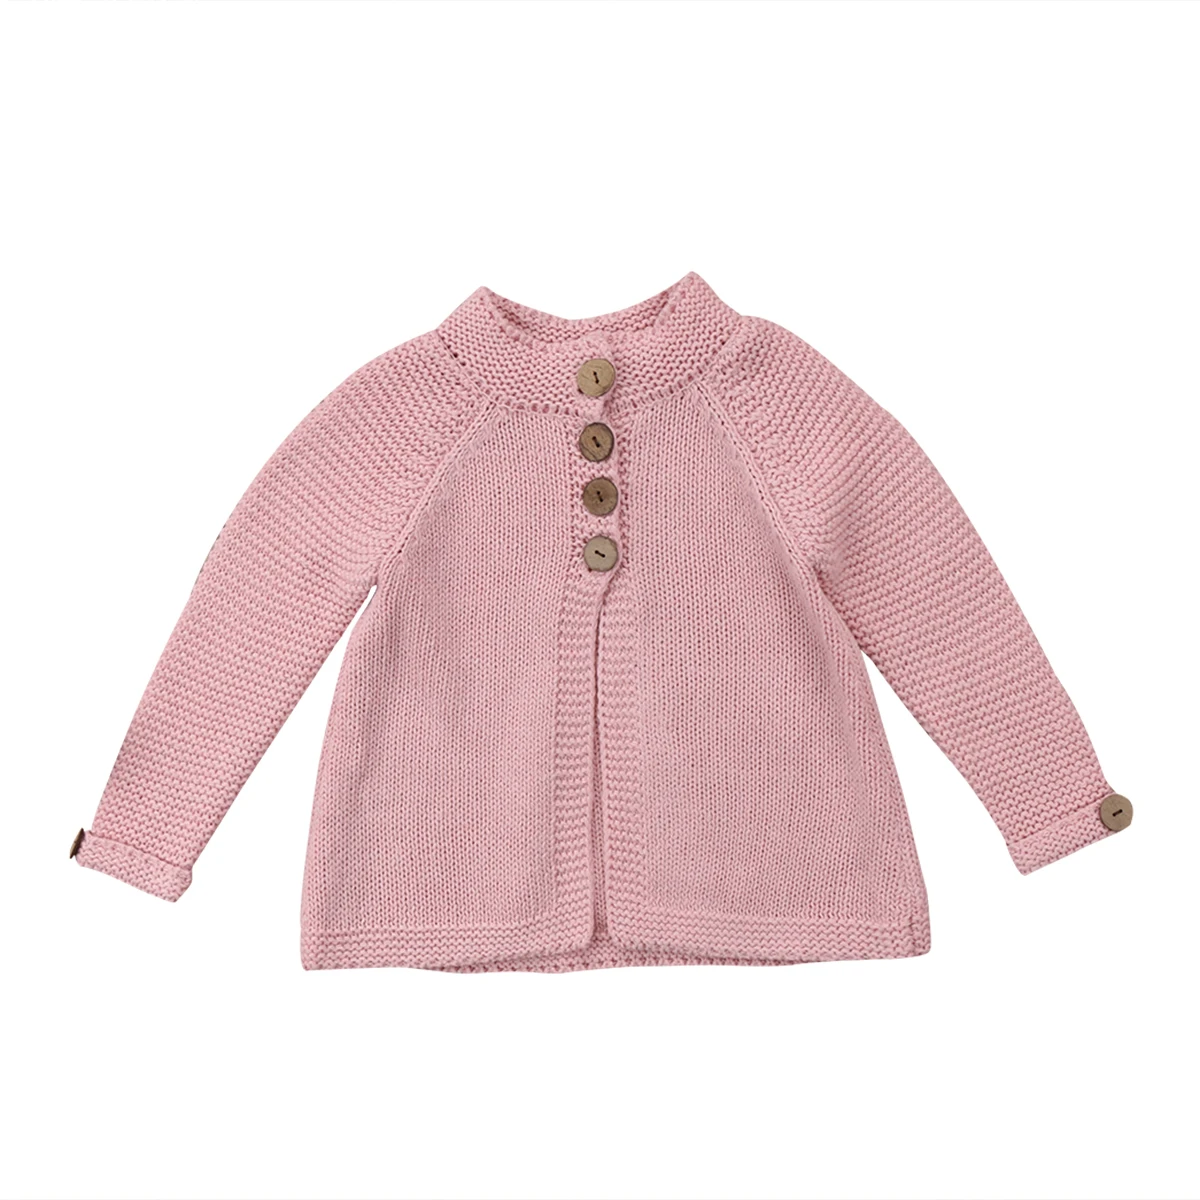 Новое поступление, зимние свитера, пальто, детский плащ для маленьких девочек, теплые свитера, Детская шерстяная вязаная одежда, От 1 до 8 лет - Цвет: Розовый